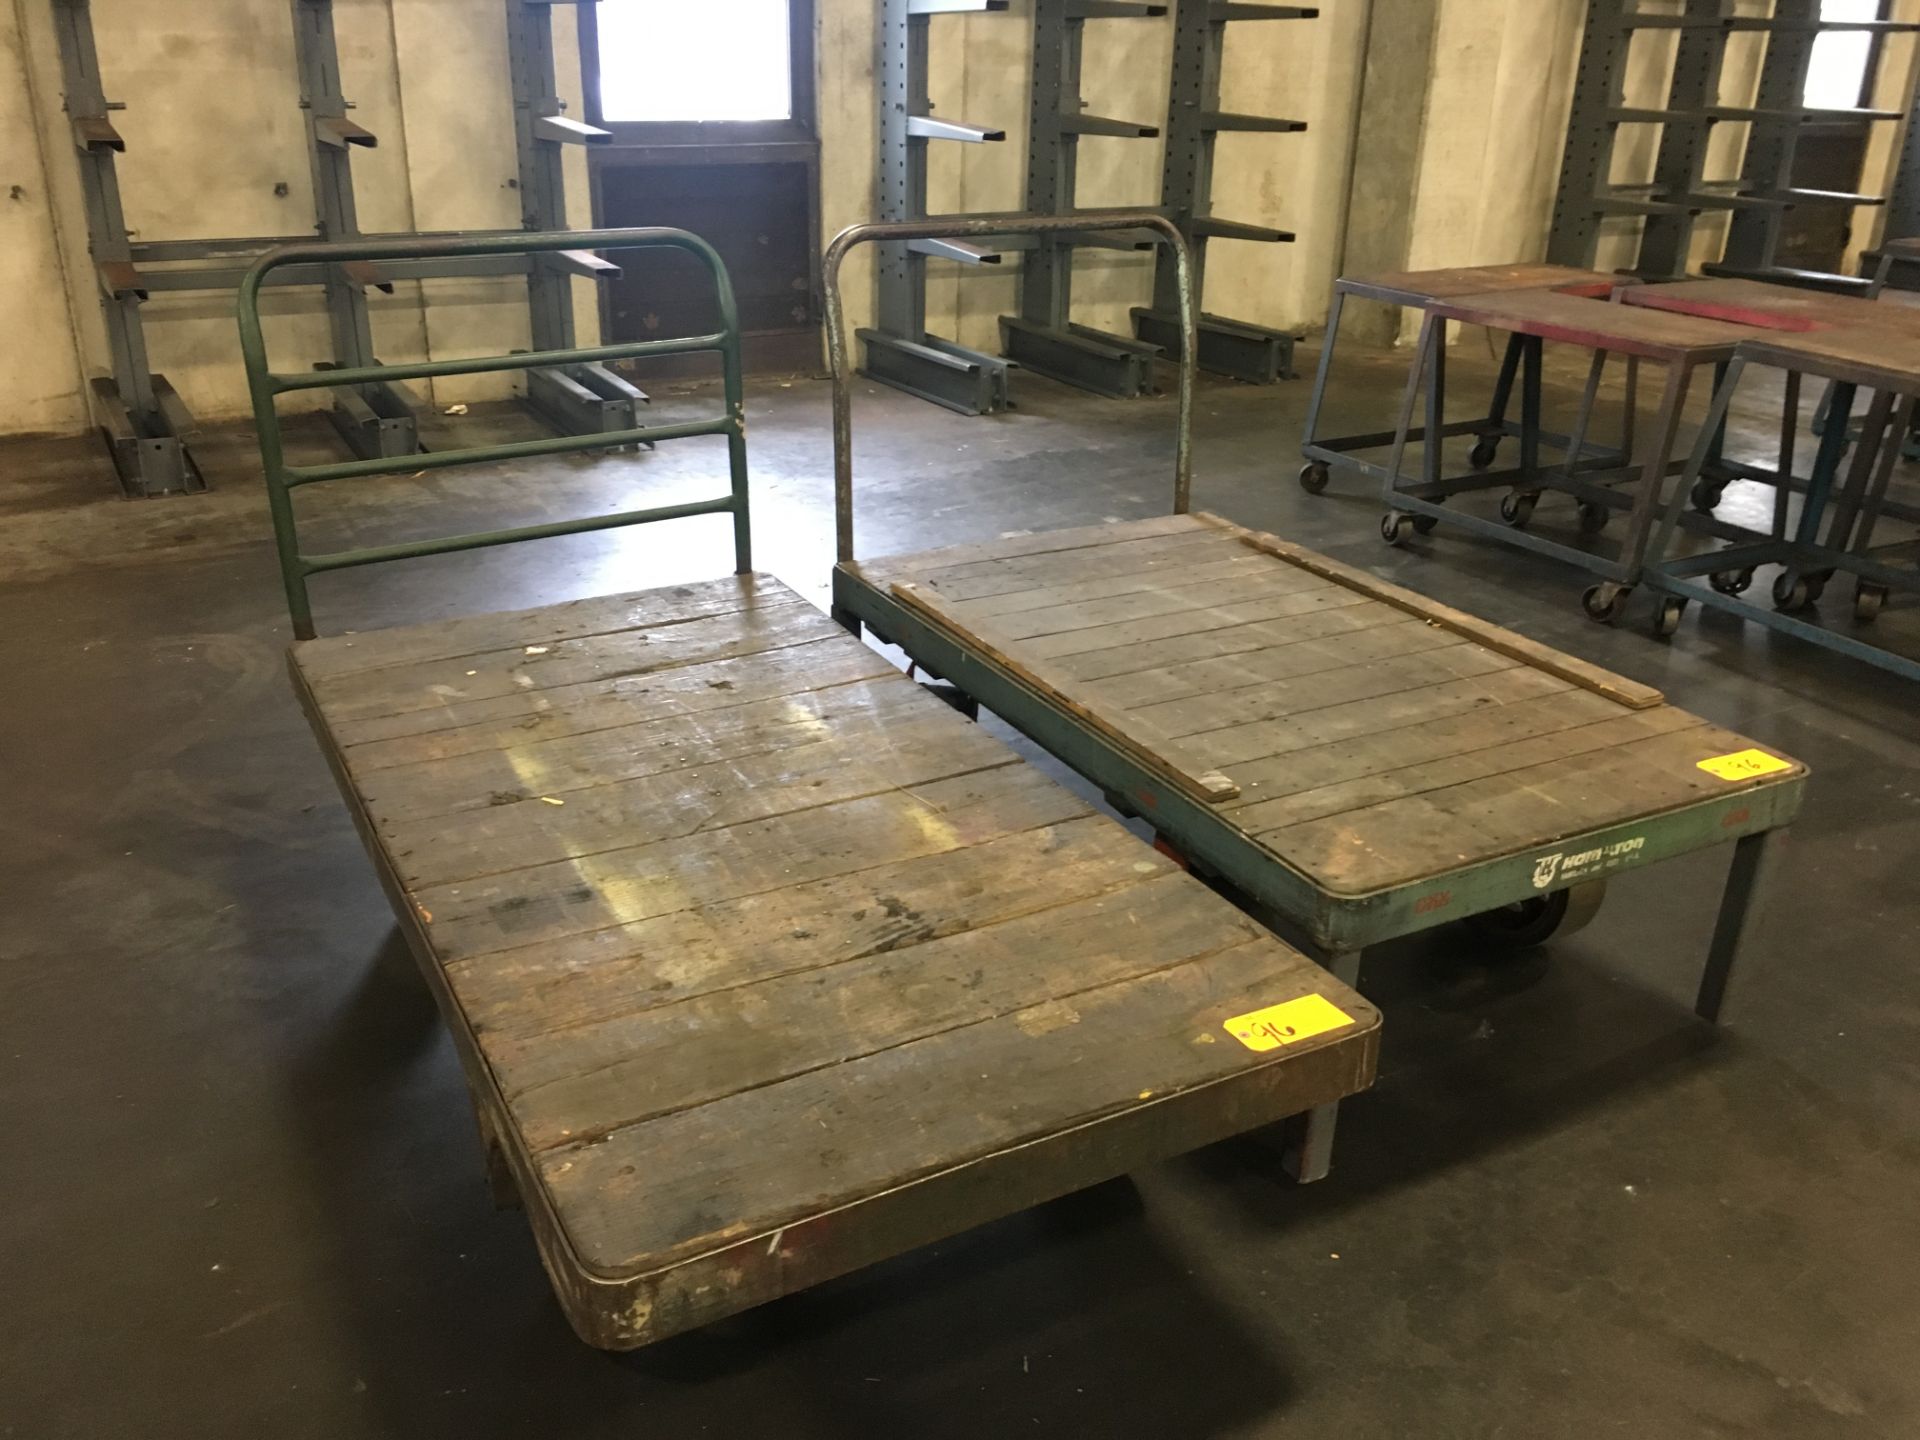 (2) Flat Bed Carts